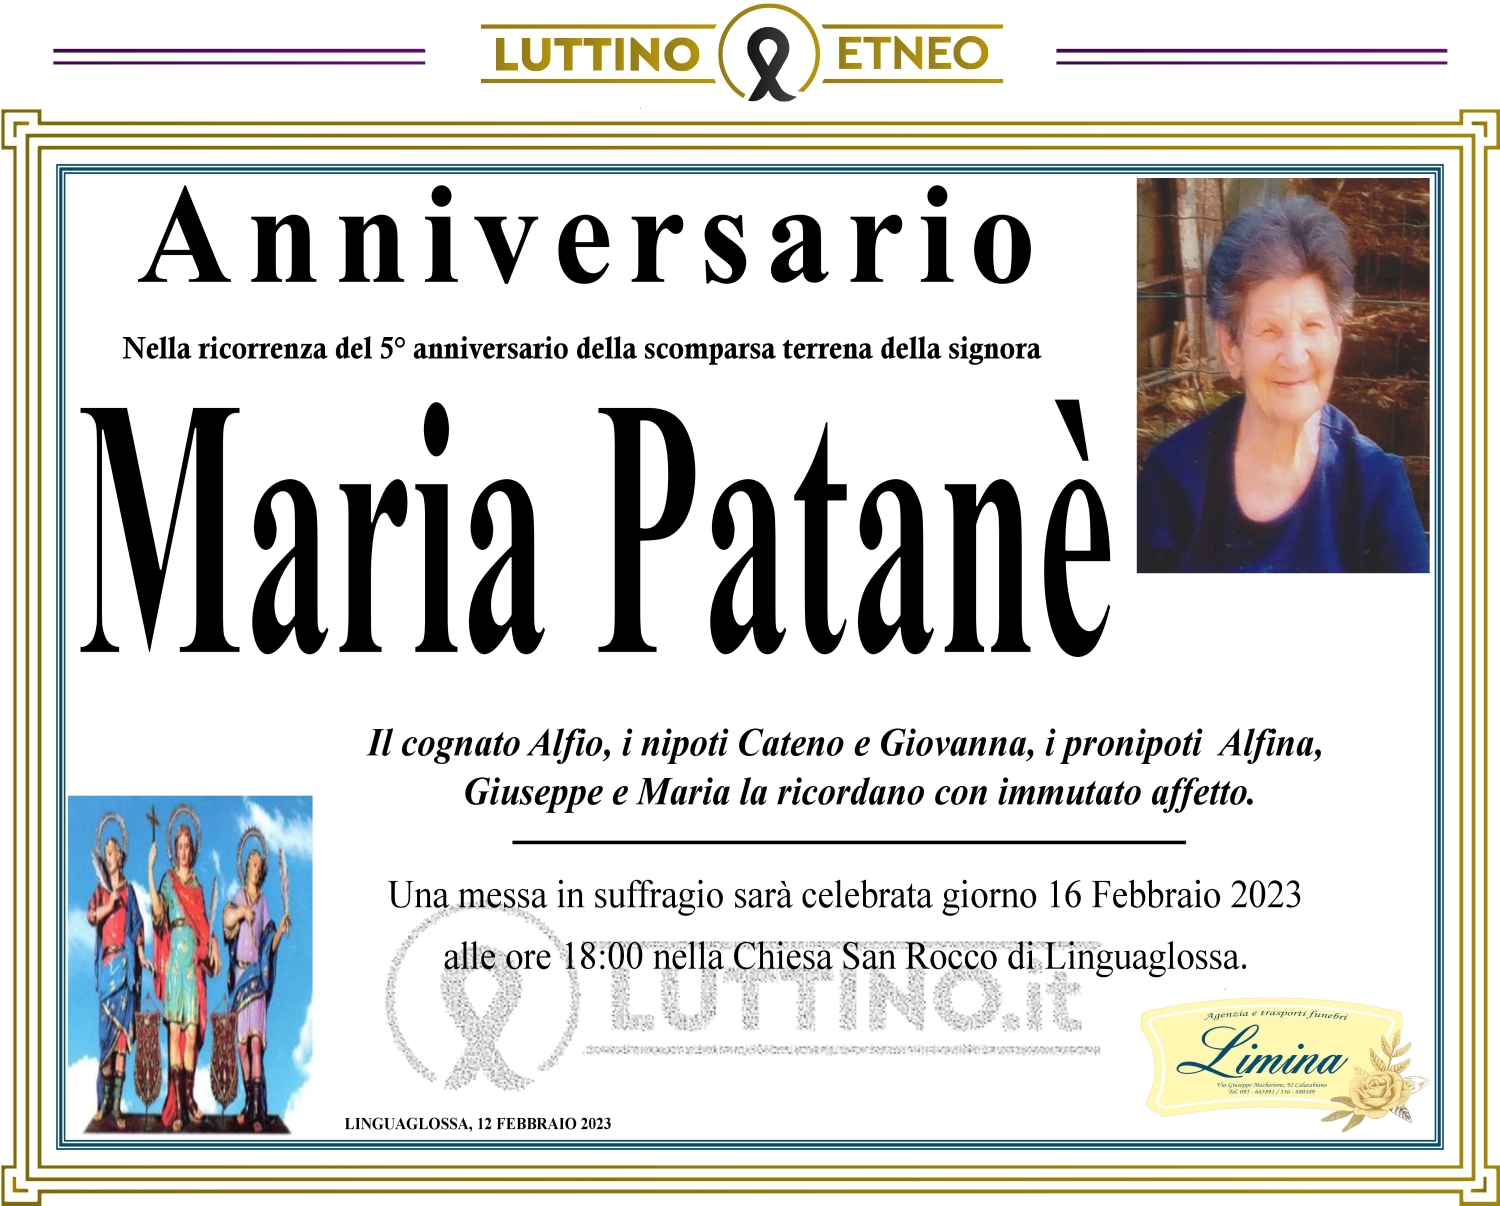 Maria Patanè